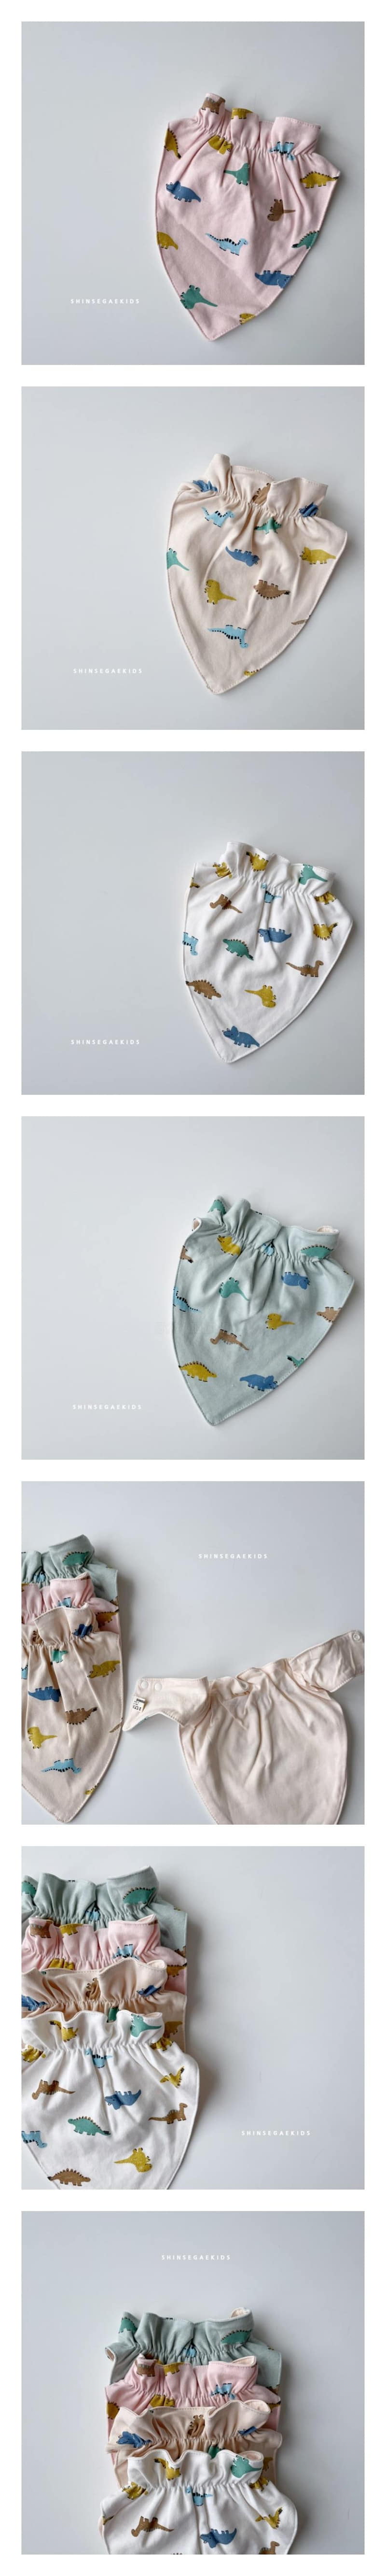 Shinseage Kids - Korean Baby Fashion - #babyboutiqueclothing - Dino Scarf Bib